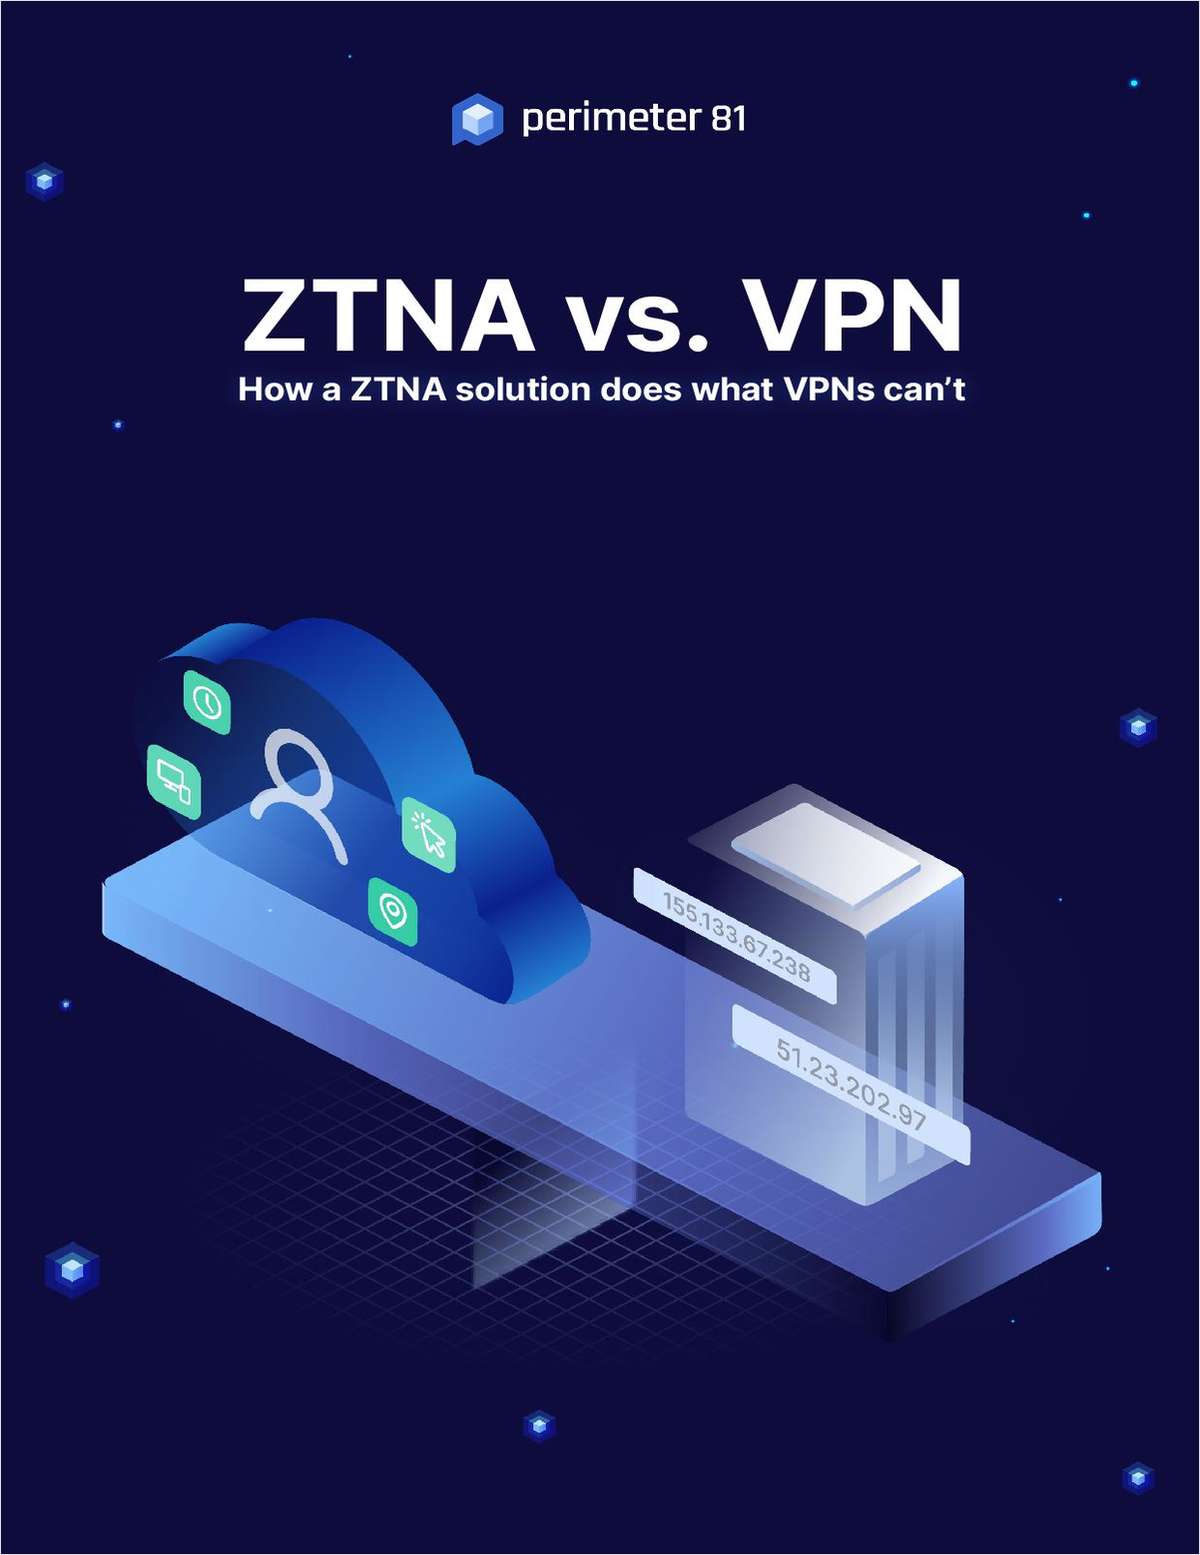  ZTNA vs. VPN: And The Winner Is